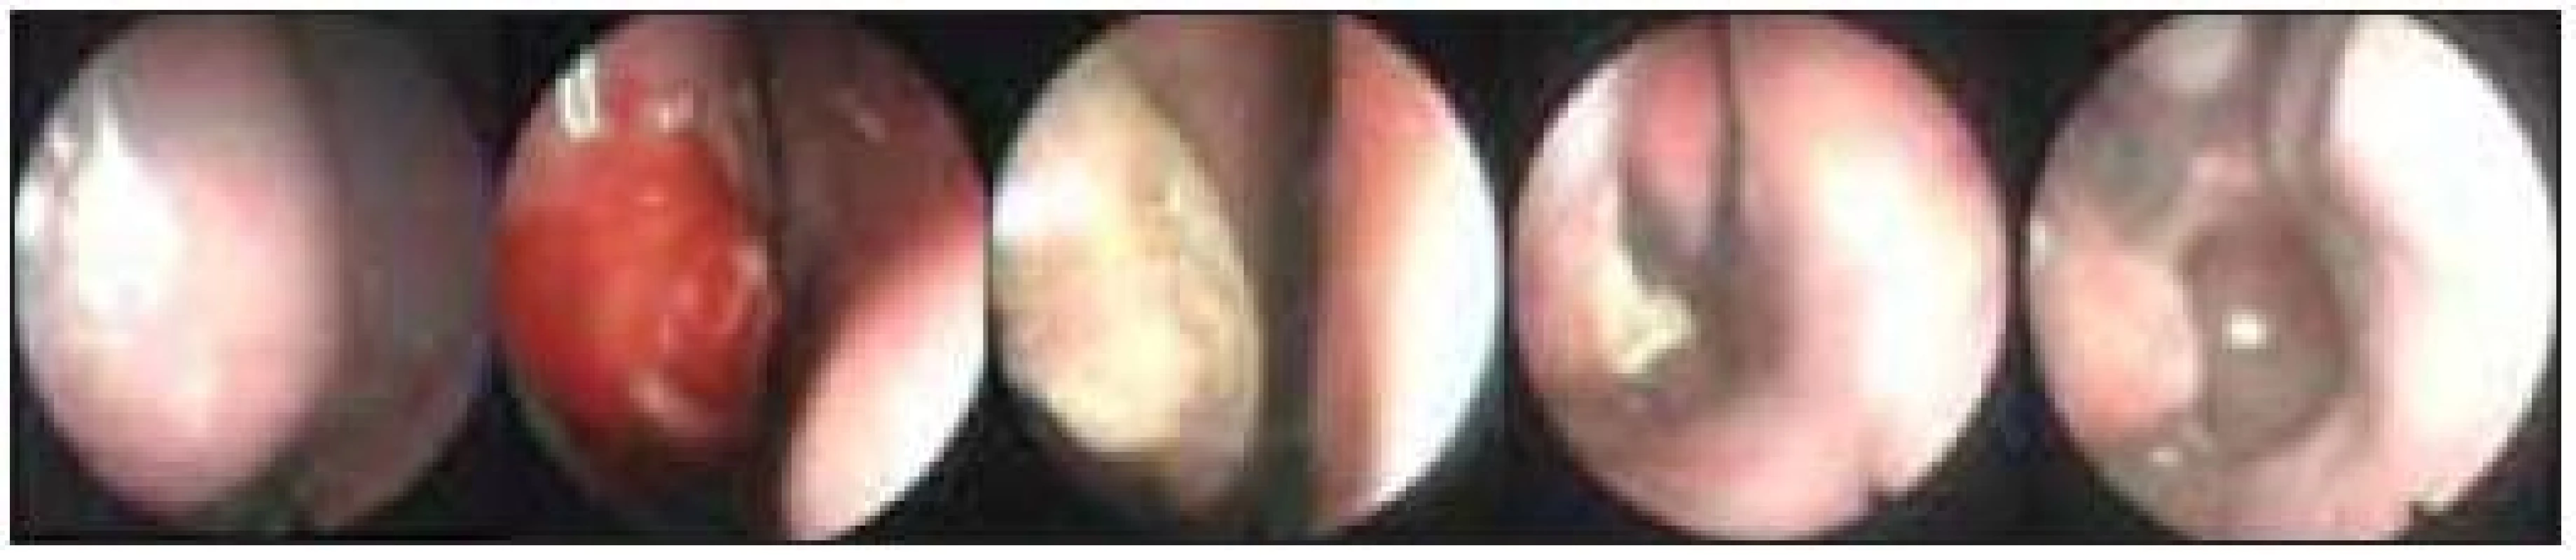 Dokumentace pooperačního hojení a efektu laserového zákroku na dolní skořepě vpravo; zcela vlevo stav před operací, zcela vpravo stav 3 měsíce po operaci. 